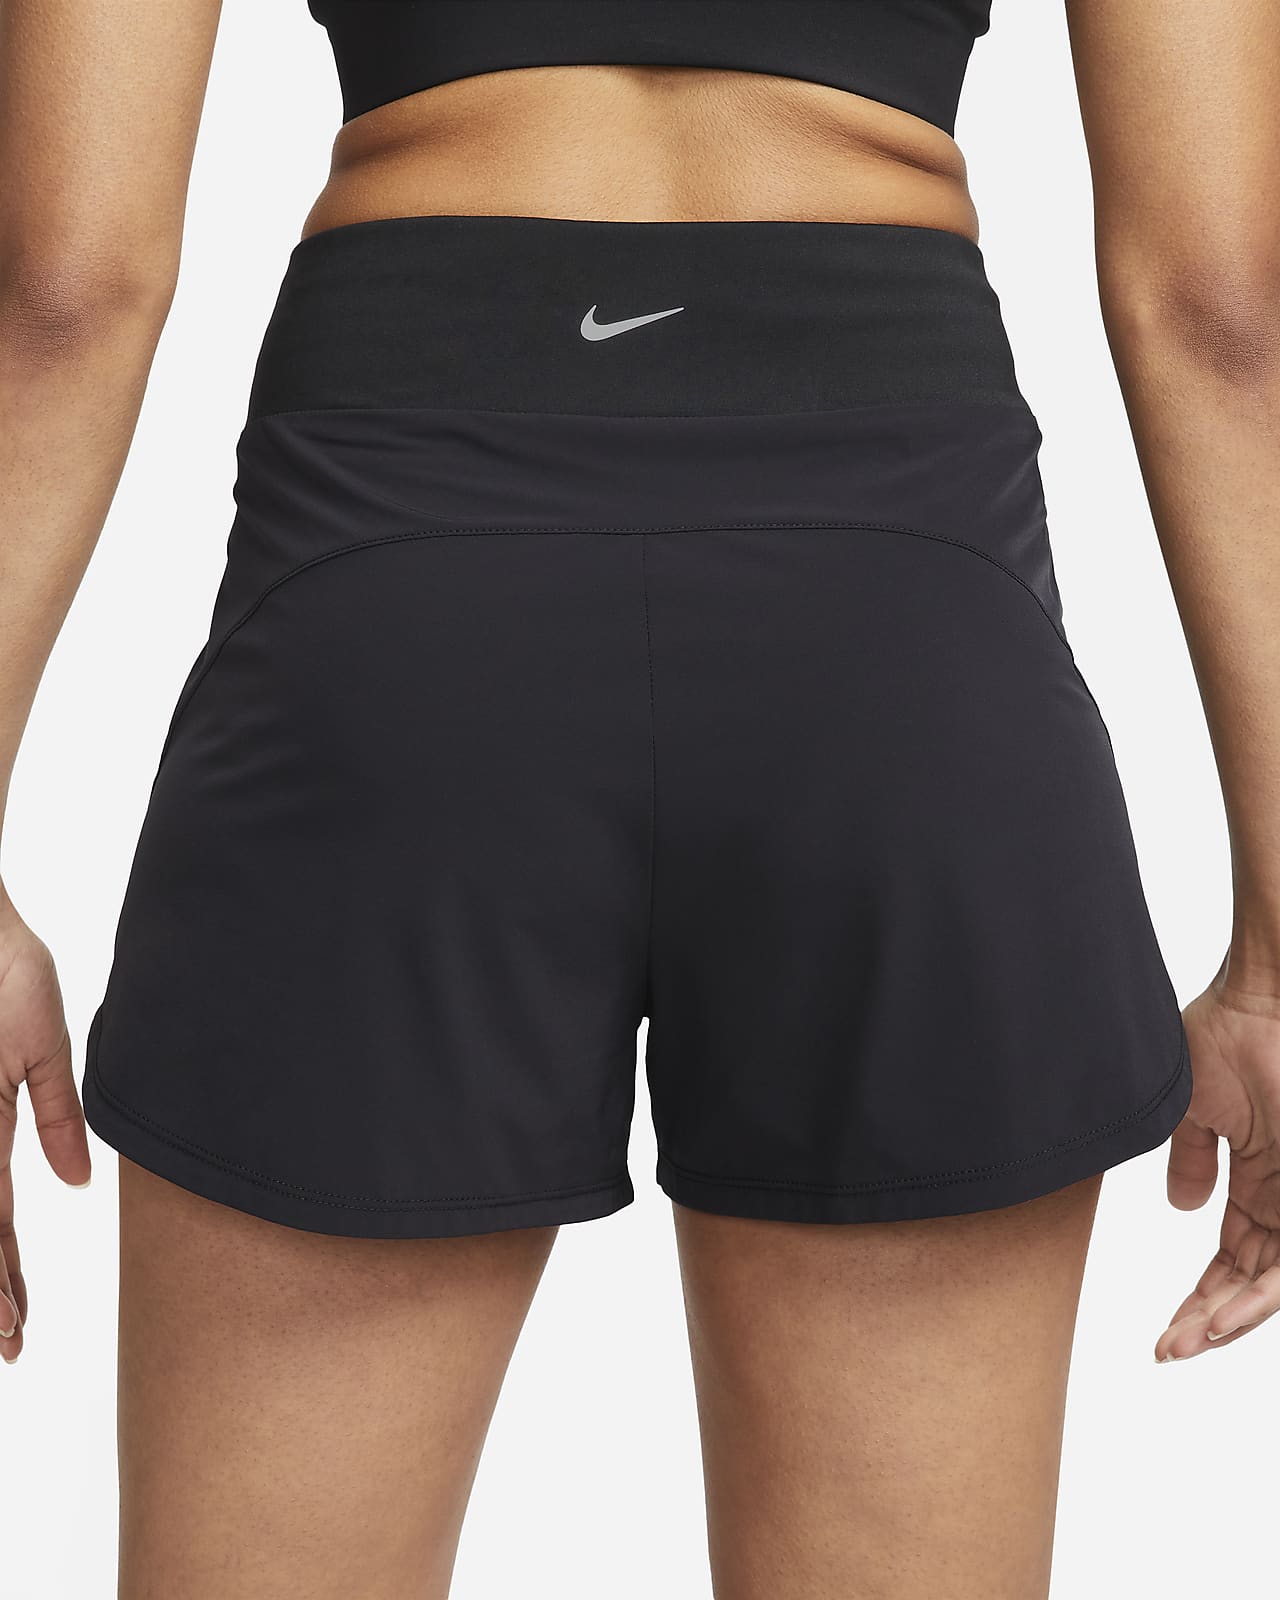 Nike Dri Fit Black Cropped Training Sweat Pants Women's Size XS 904462 -  beyond exchange